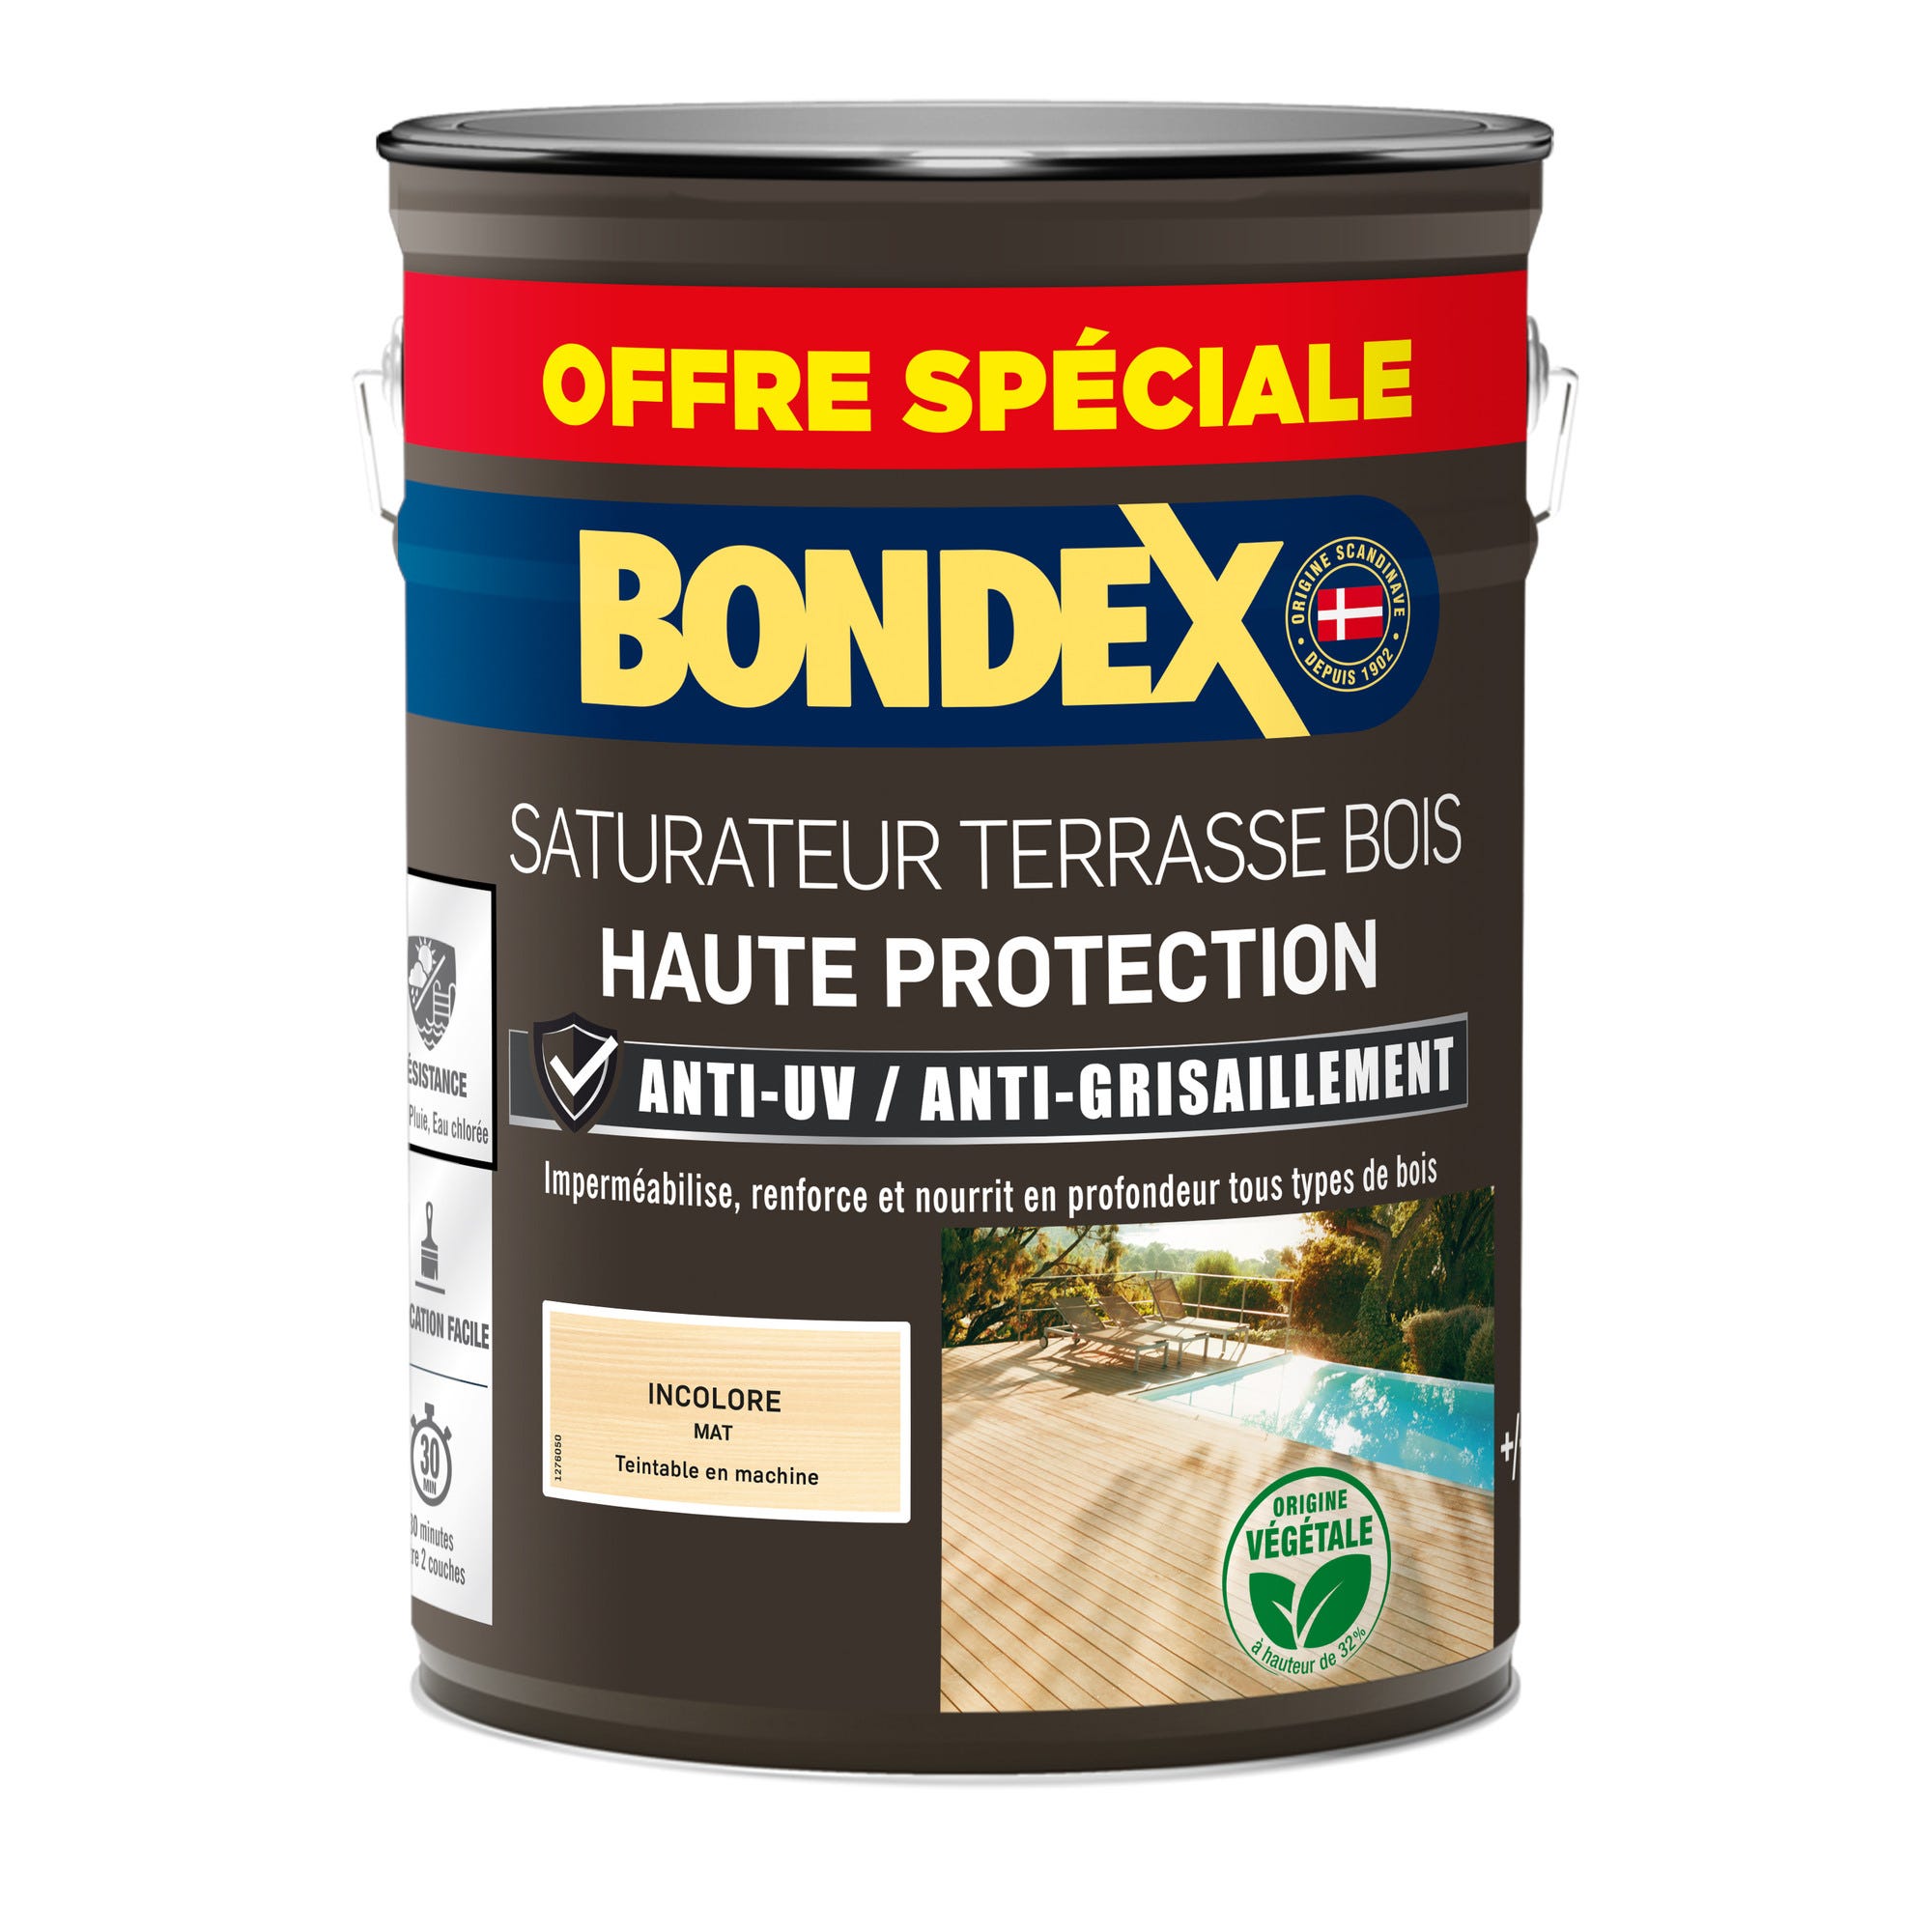 Saturateur terrasse bois anti UV et grisaillement incolore 5 L + 20% gratuit - BONDEX 2